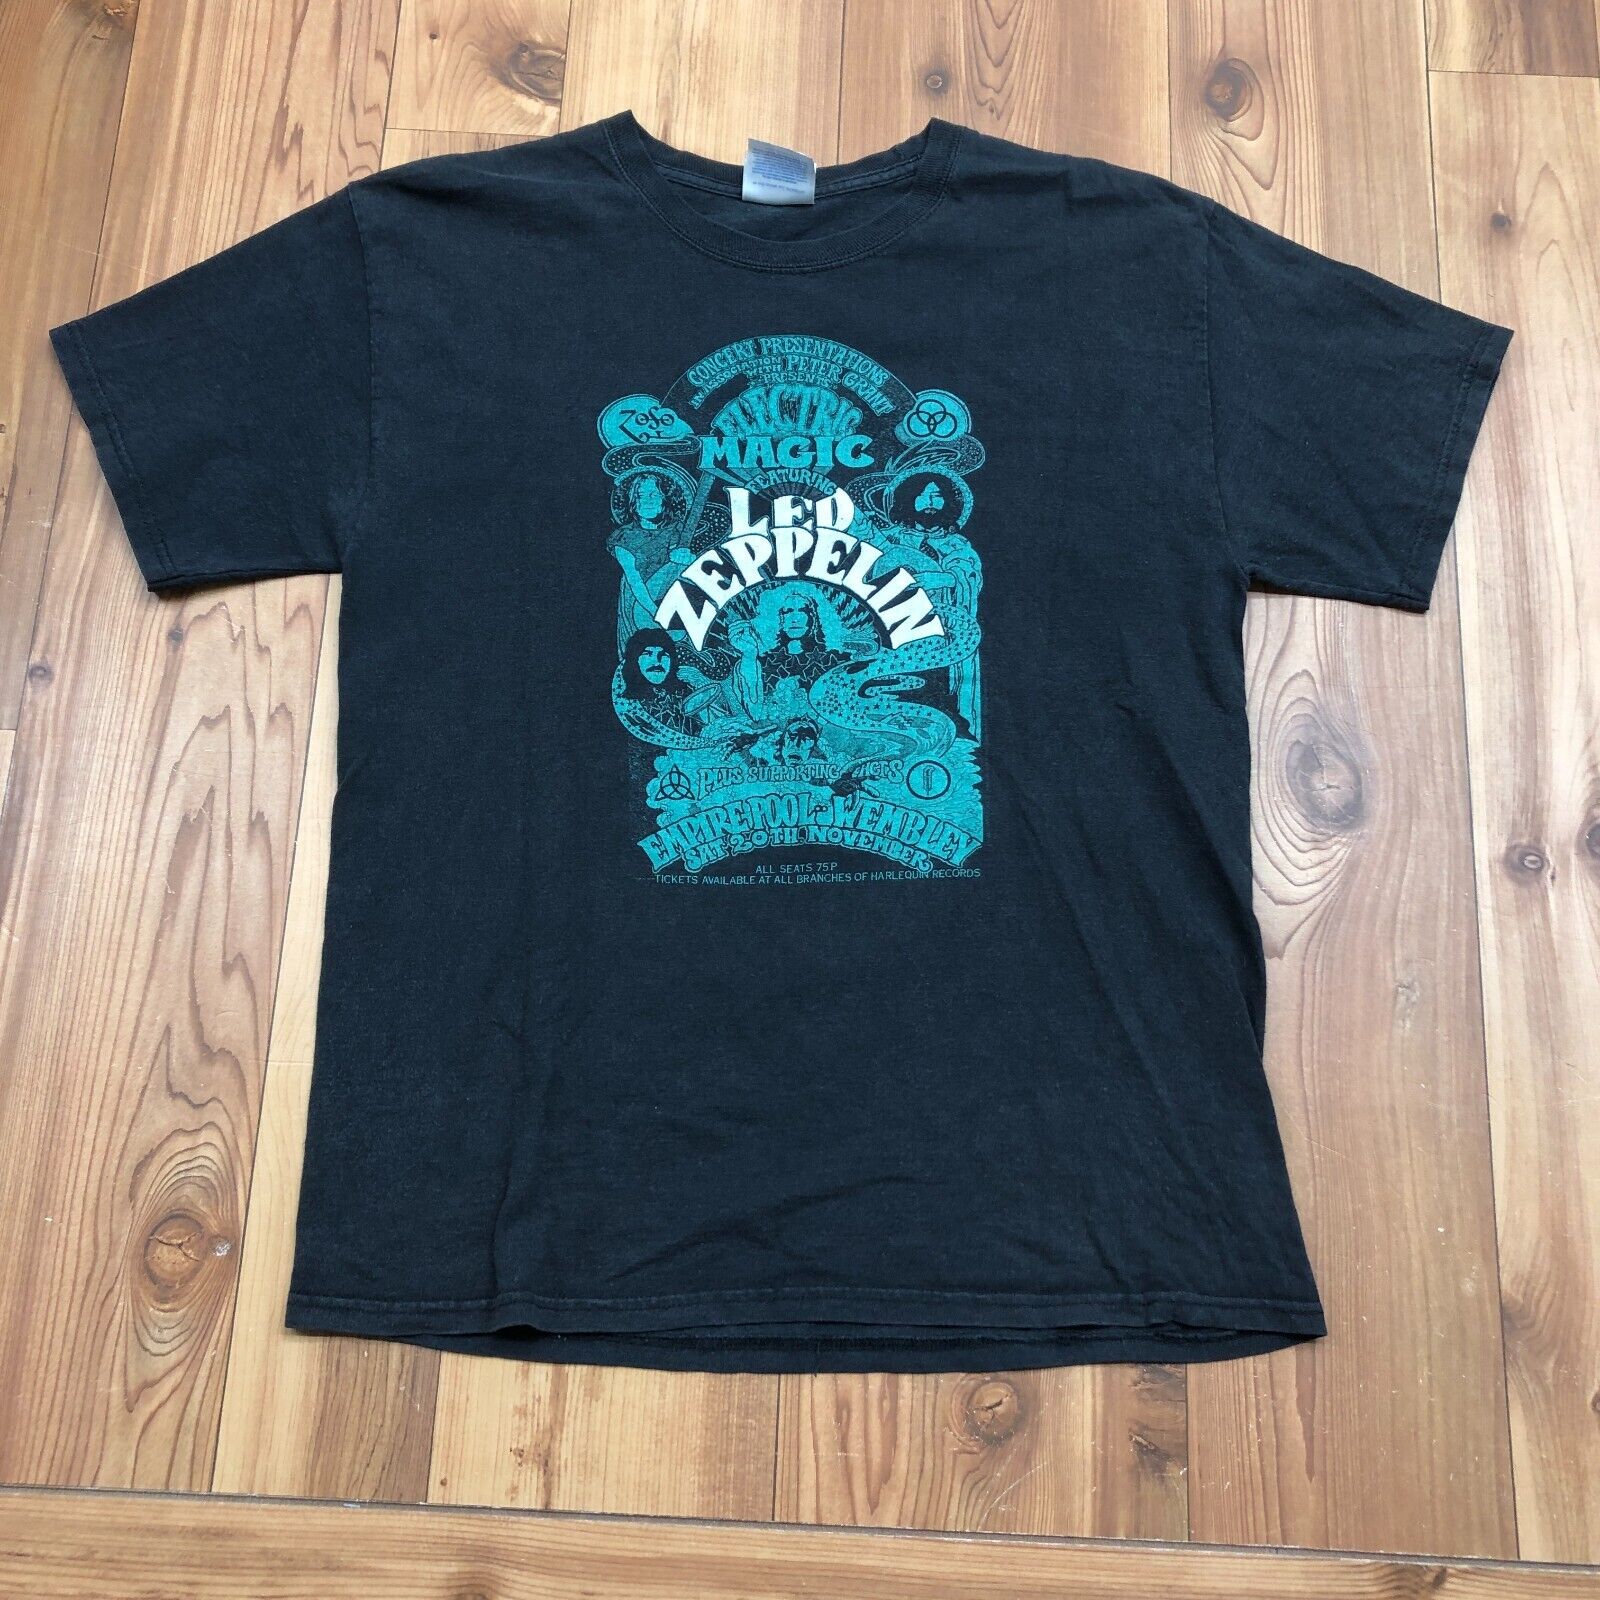 Hanes Black Electric Magic Ft Led Zeppelin Tour Graphic T-Shirt Adult Size M